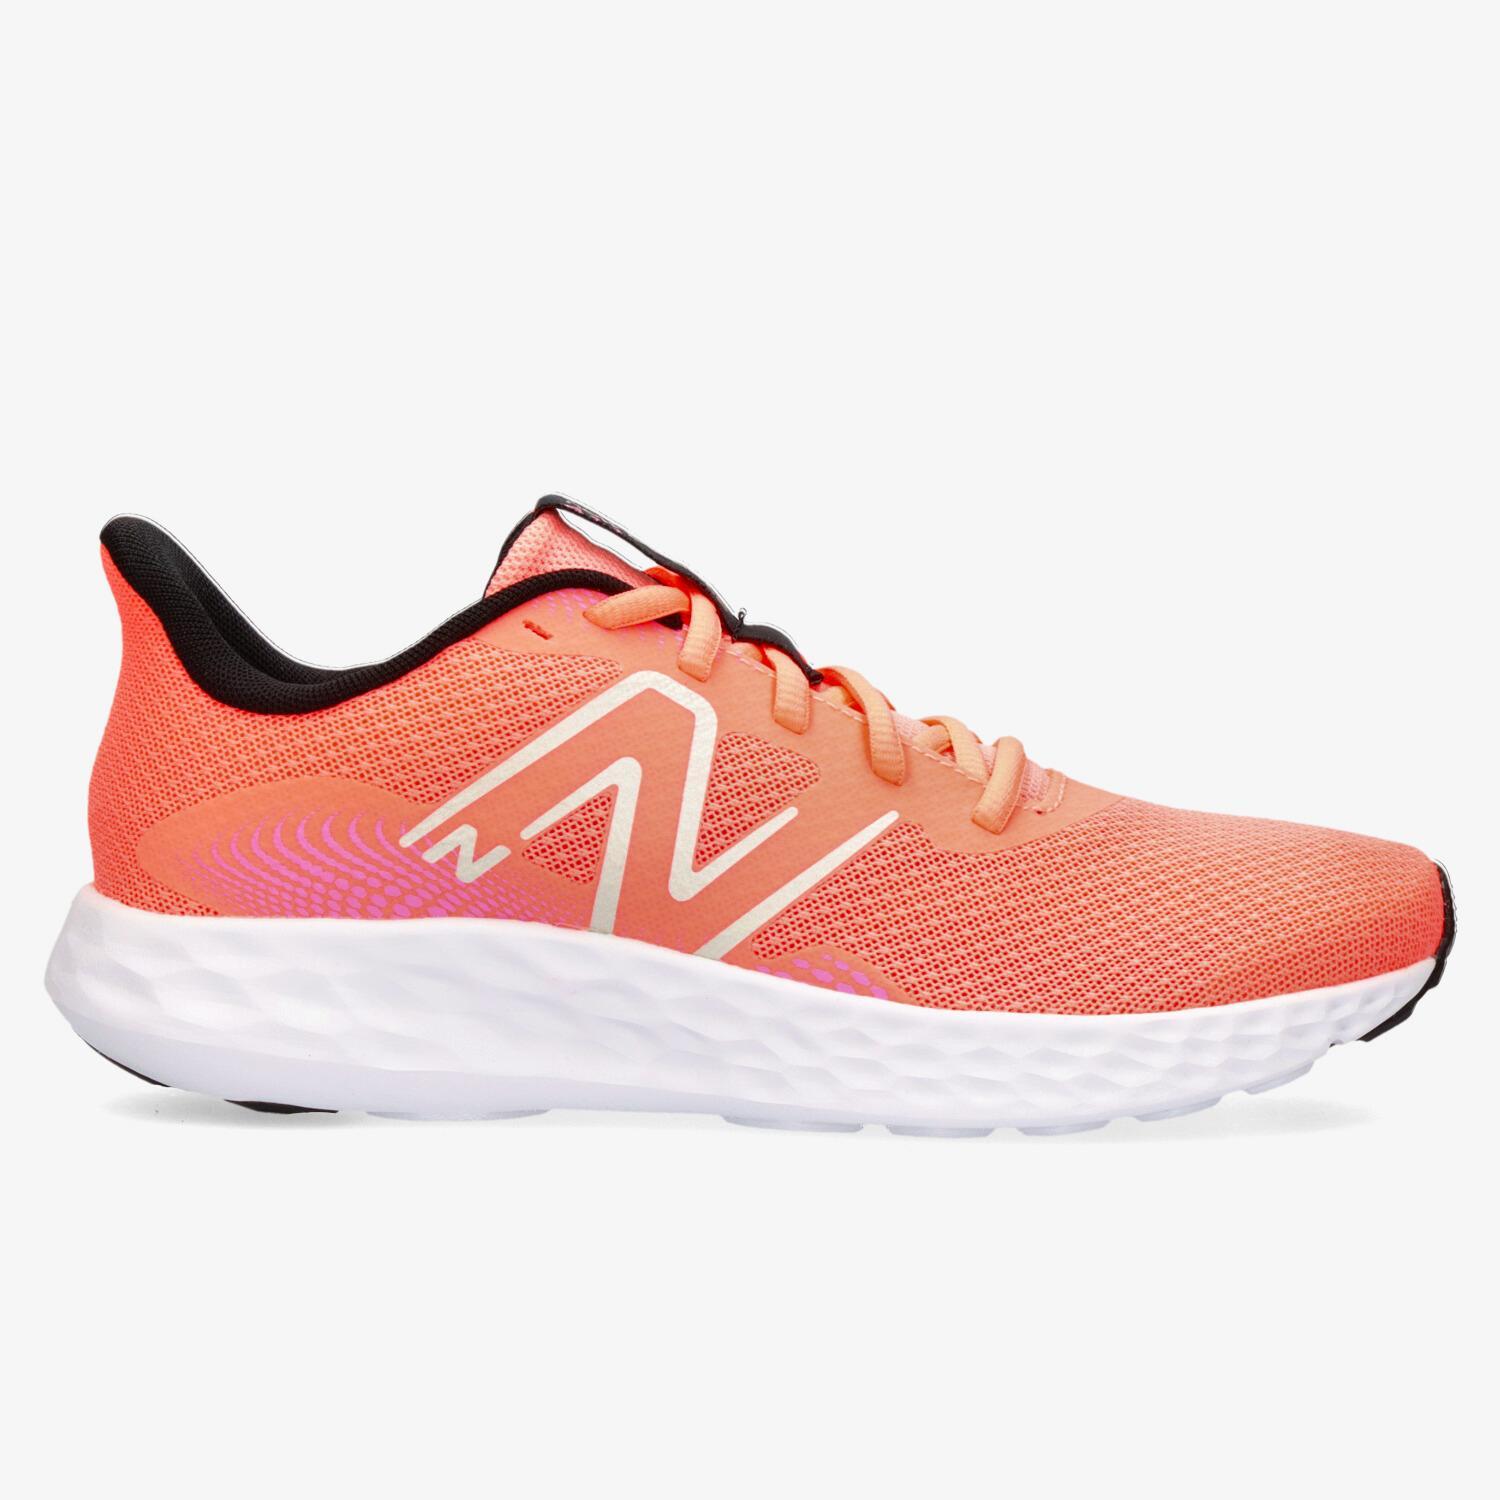 New Balance 411 v3 - Coral - Zapatillas Running Mujer